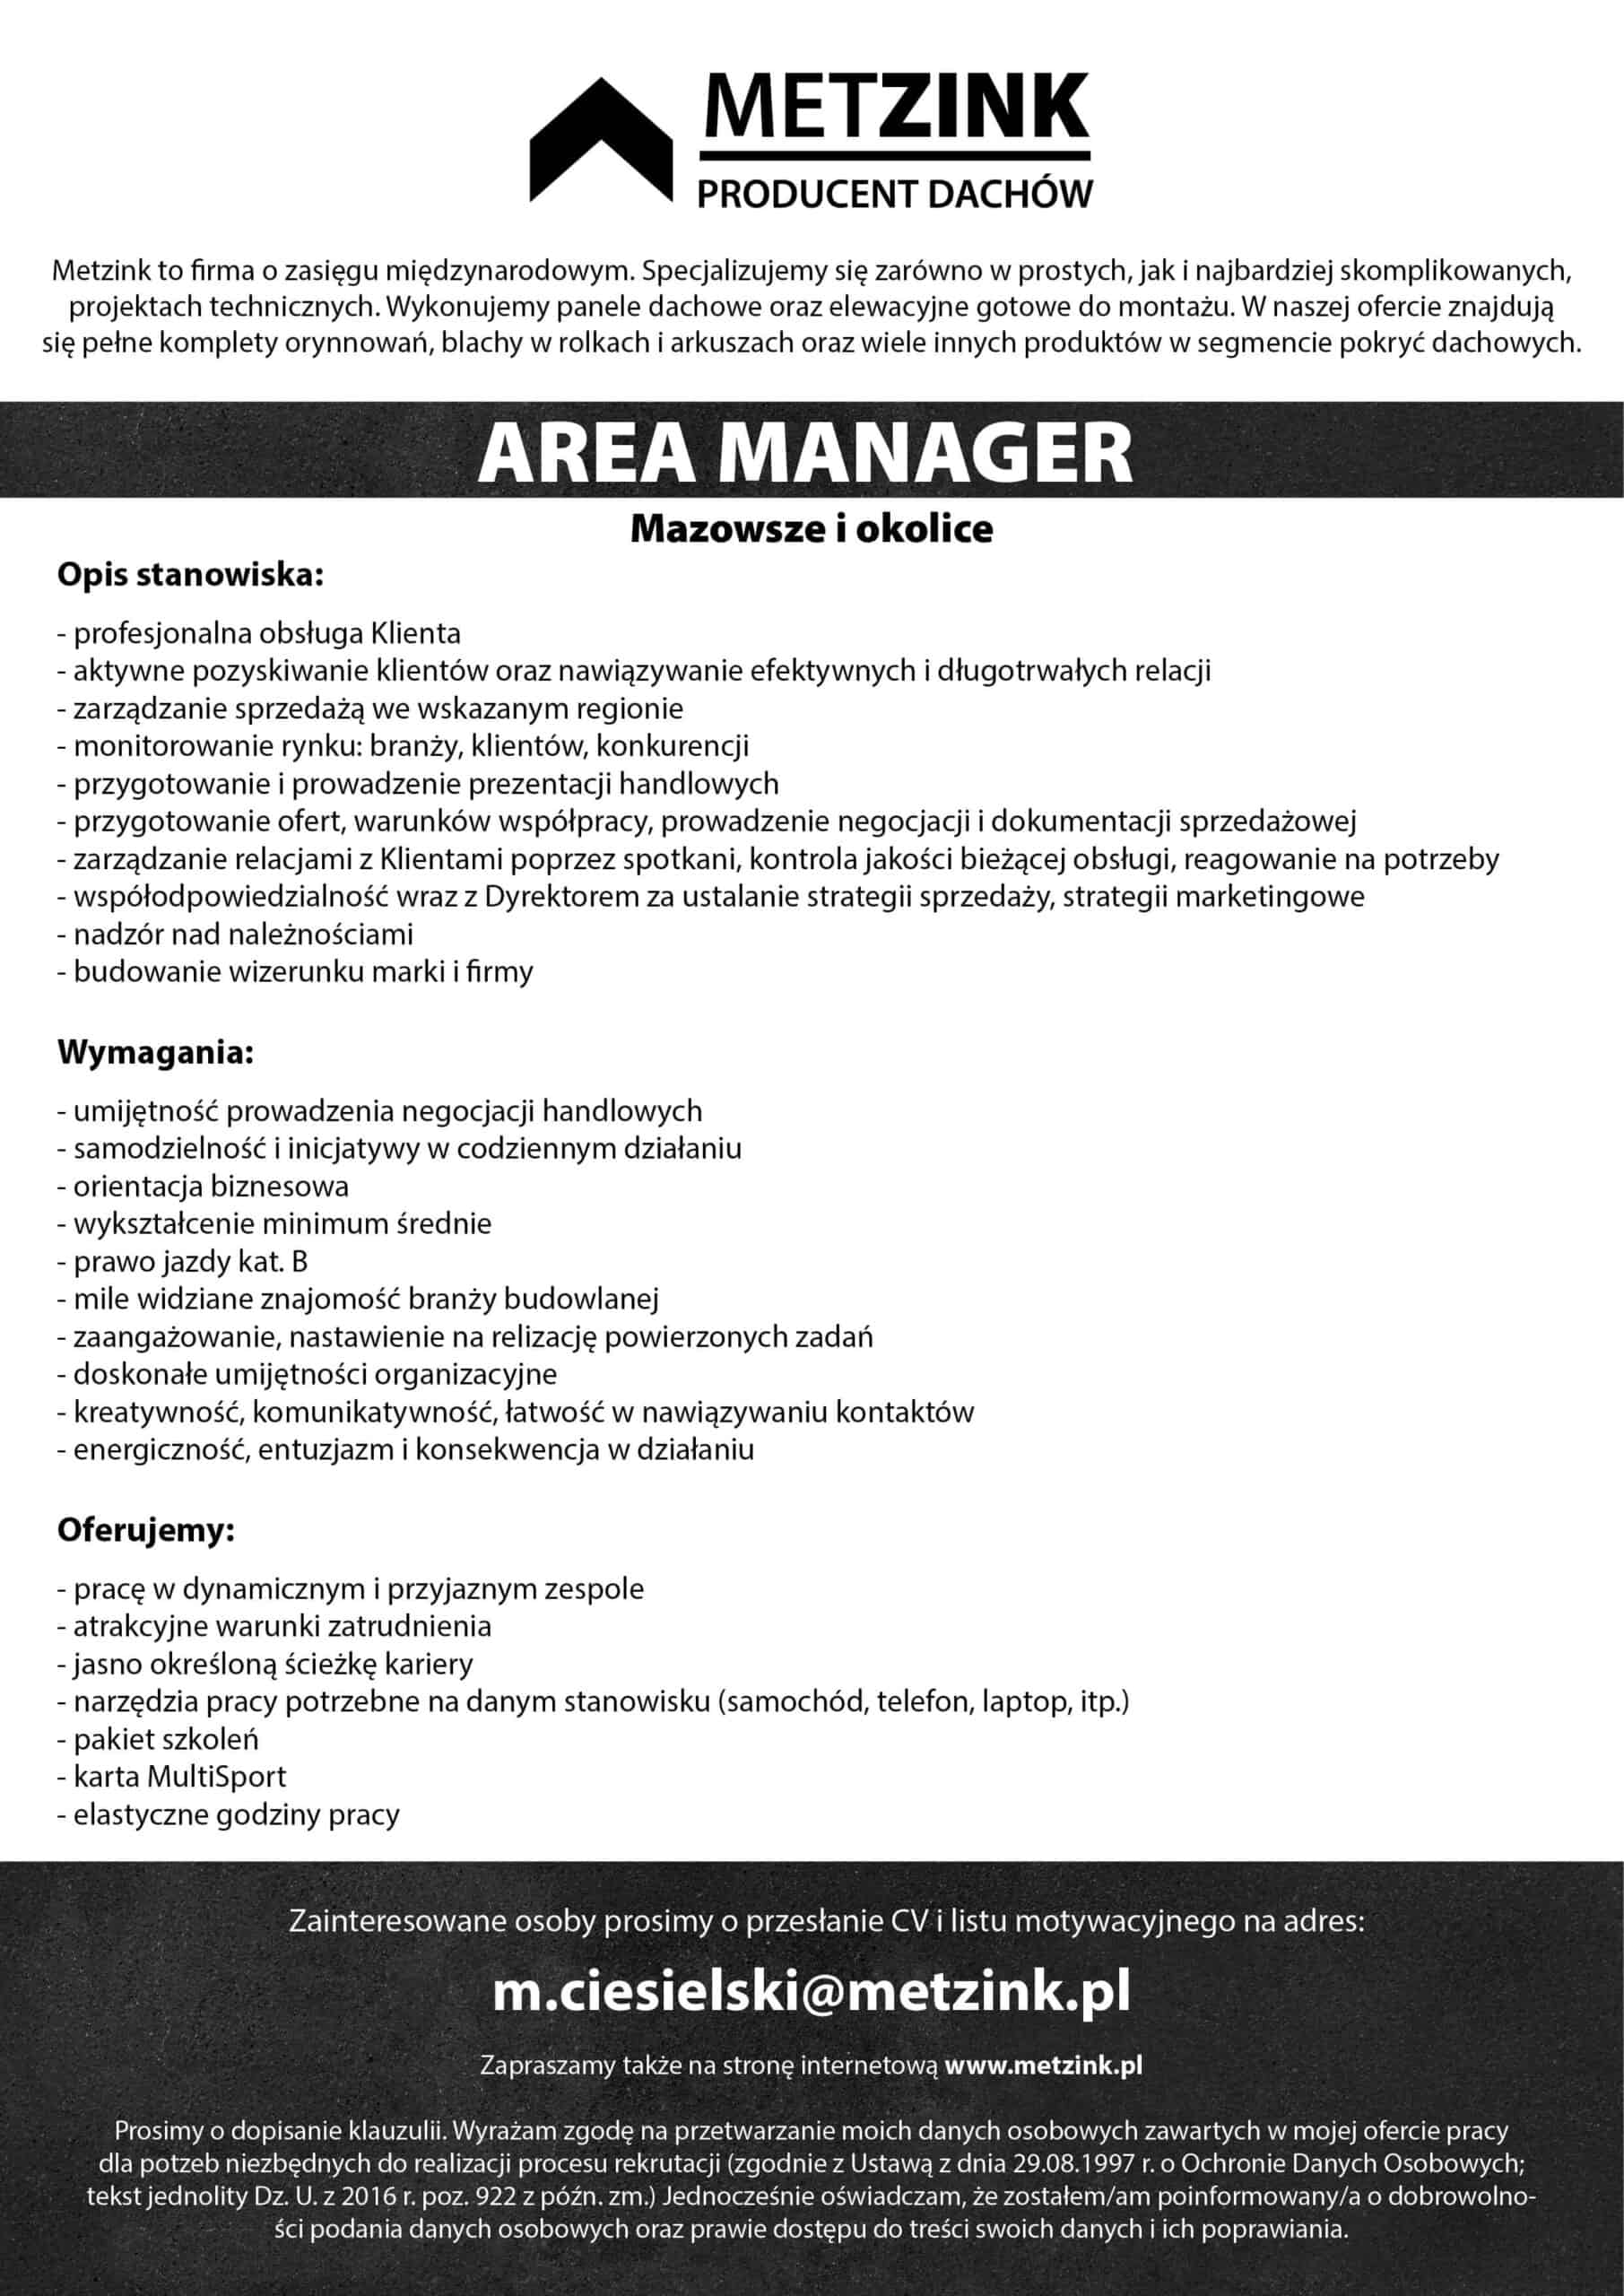 Area Manager - Mazowsze